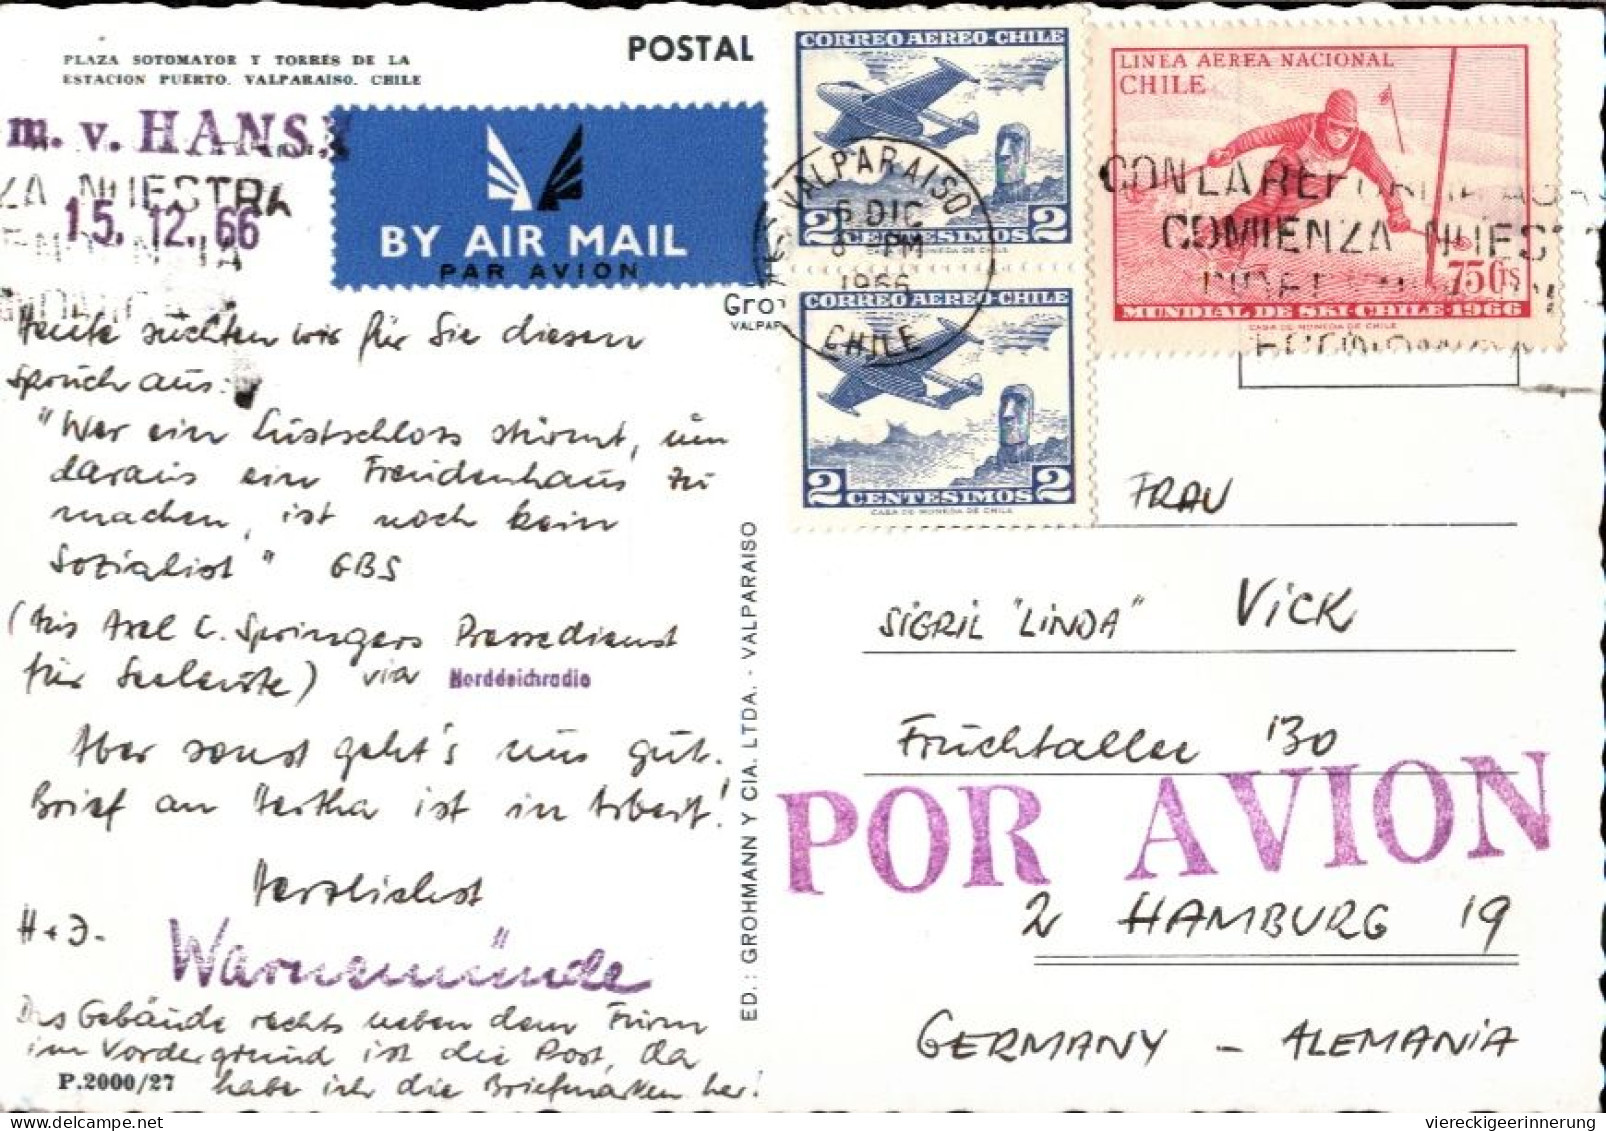 !  1966 Ansichtskarte Aus Valparaiso Chile, Hafen, Harbour, Luftpost, Abs. Seemann Vom Schiff MS Hanse, Lübeck - Cile